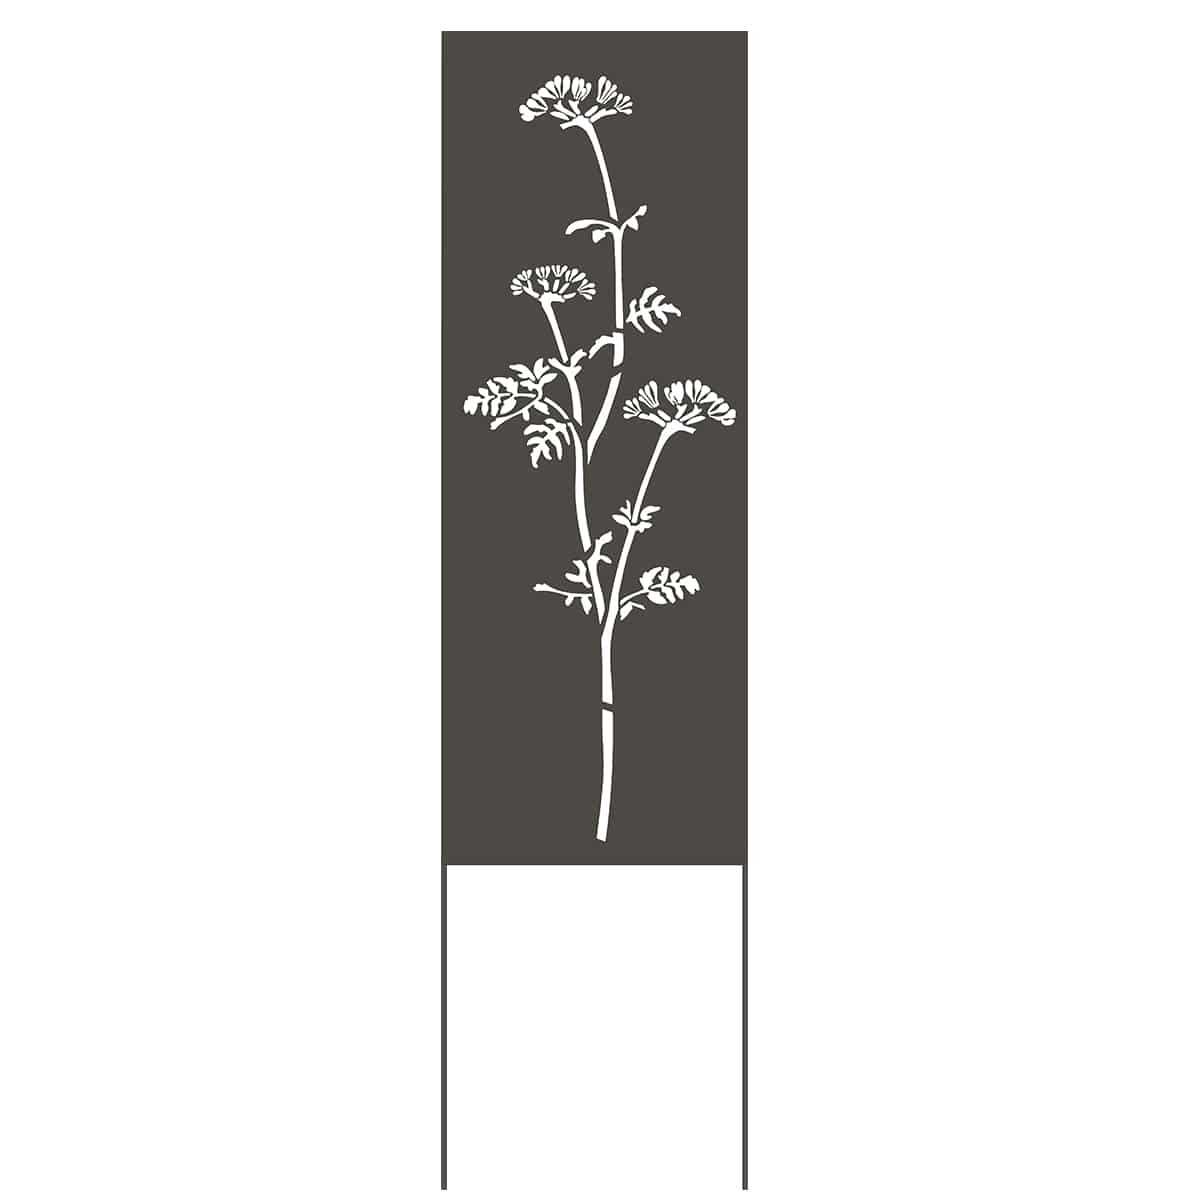 Panneau décoratif extérieur en métal H. 144 - Motif végétal